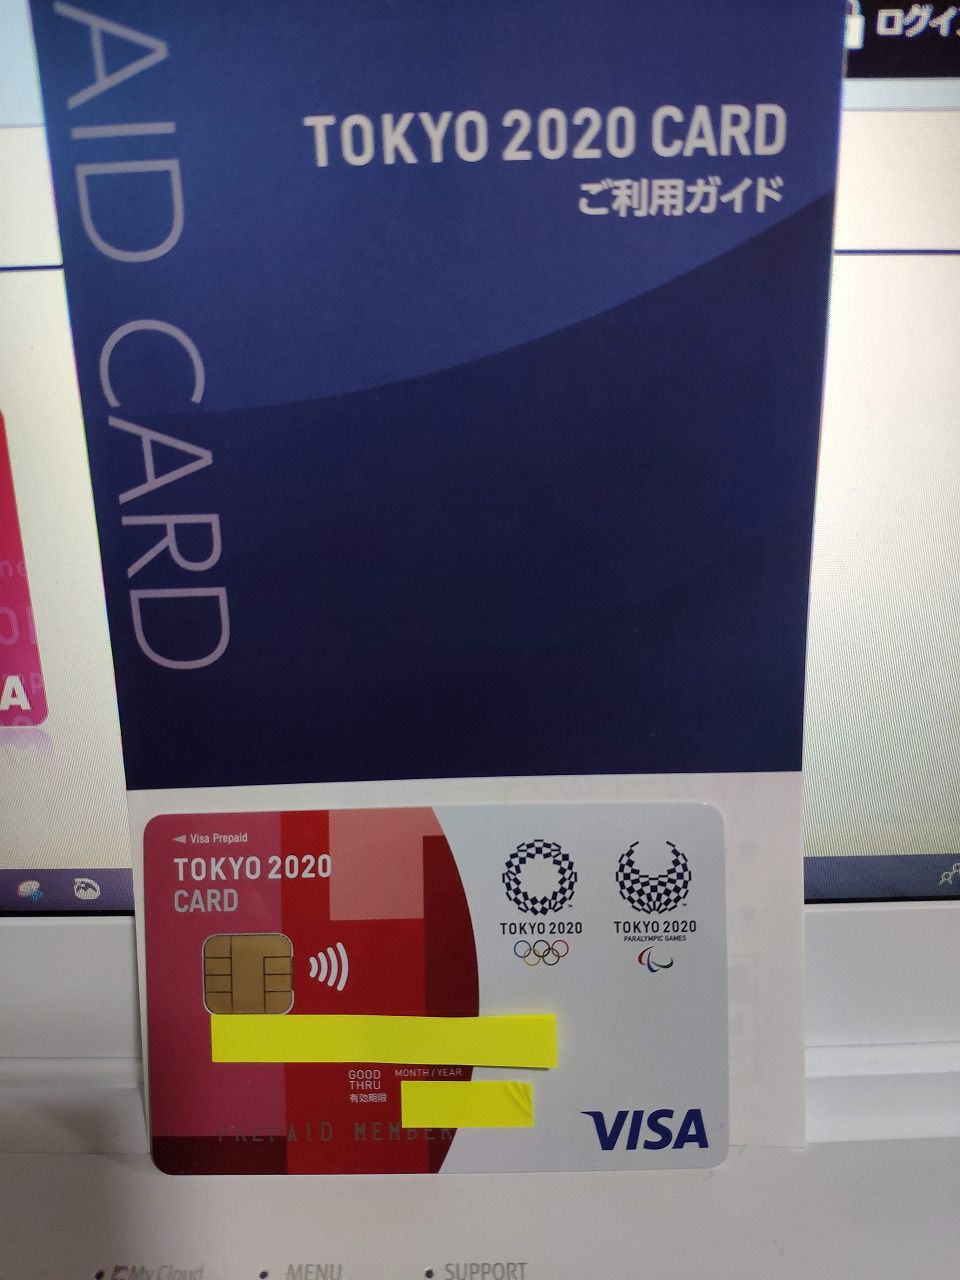 旅とスマホと徒然と : 「TOKYO 2020 CARD」のプリペイドタイプを入手してしまった